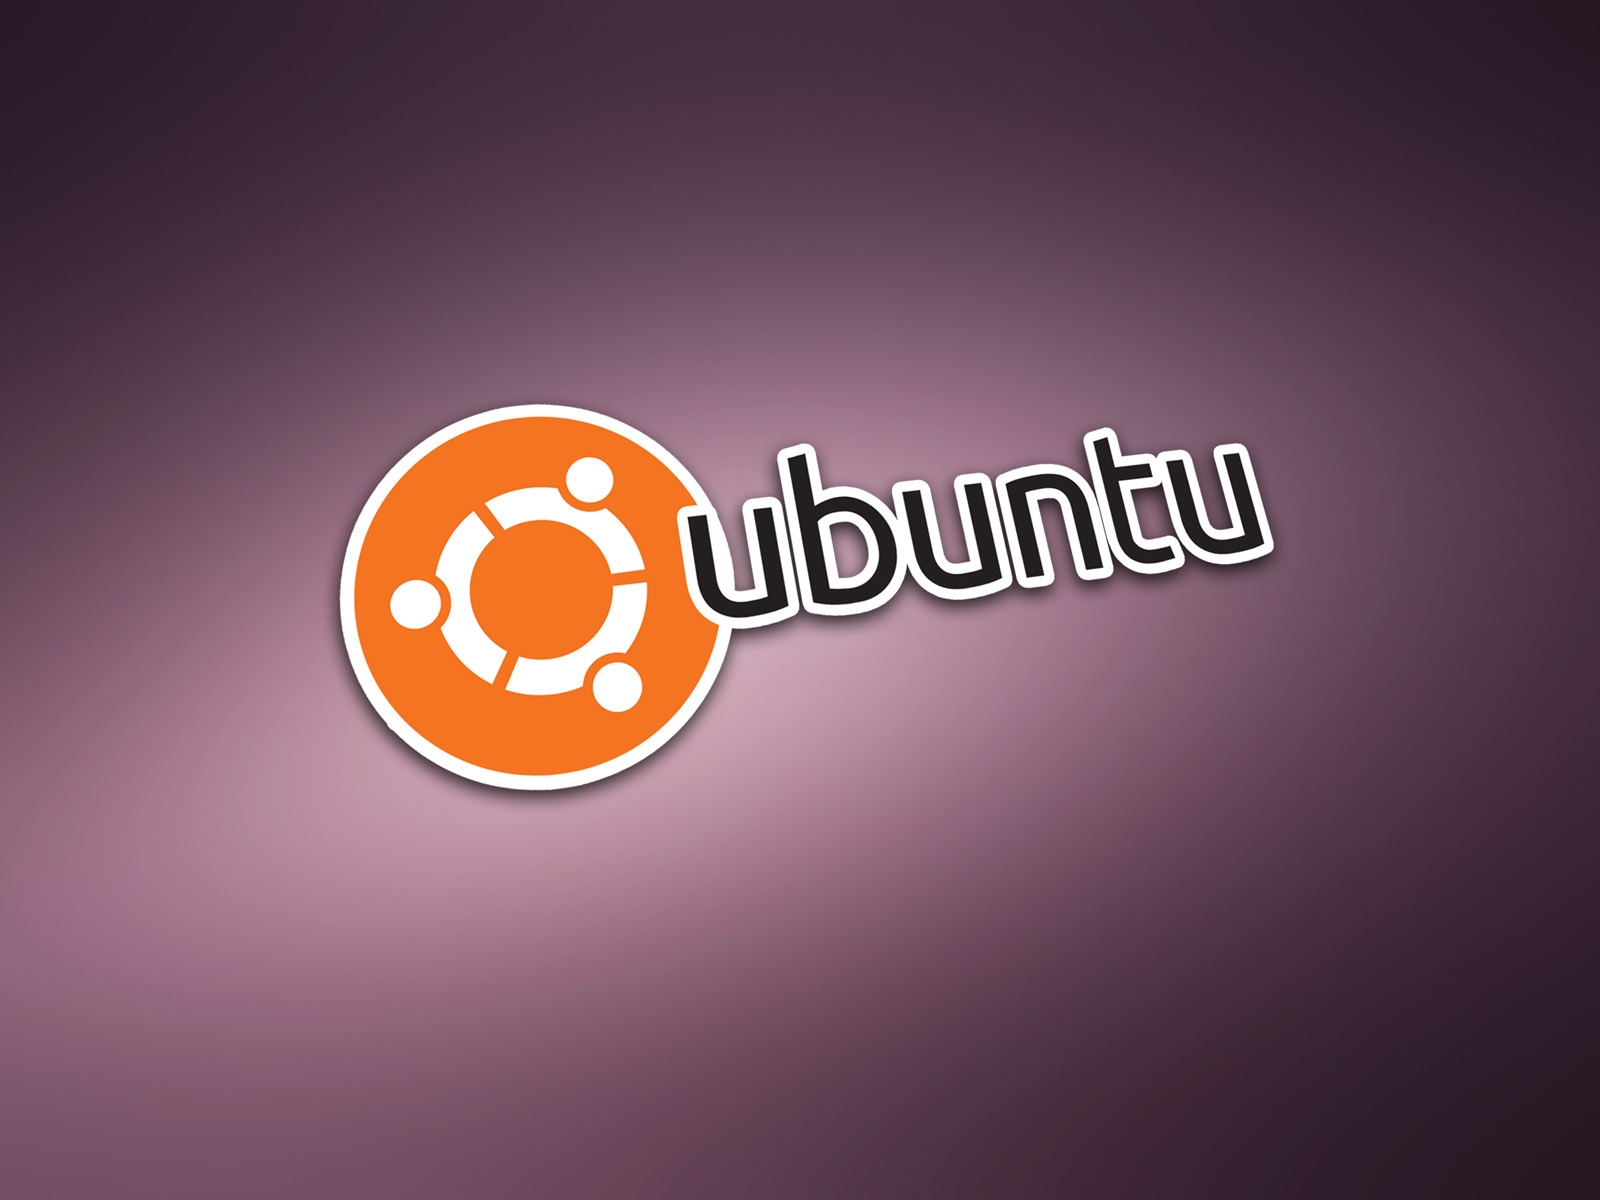 Ubuntu Modern Logo for 1600 x 1200 resolution